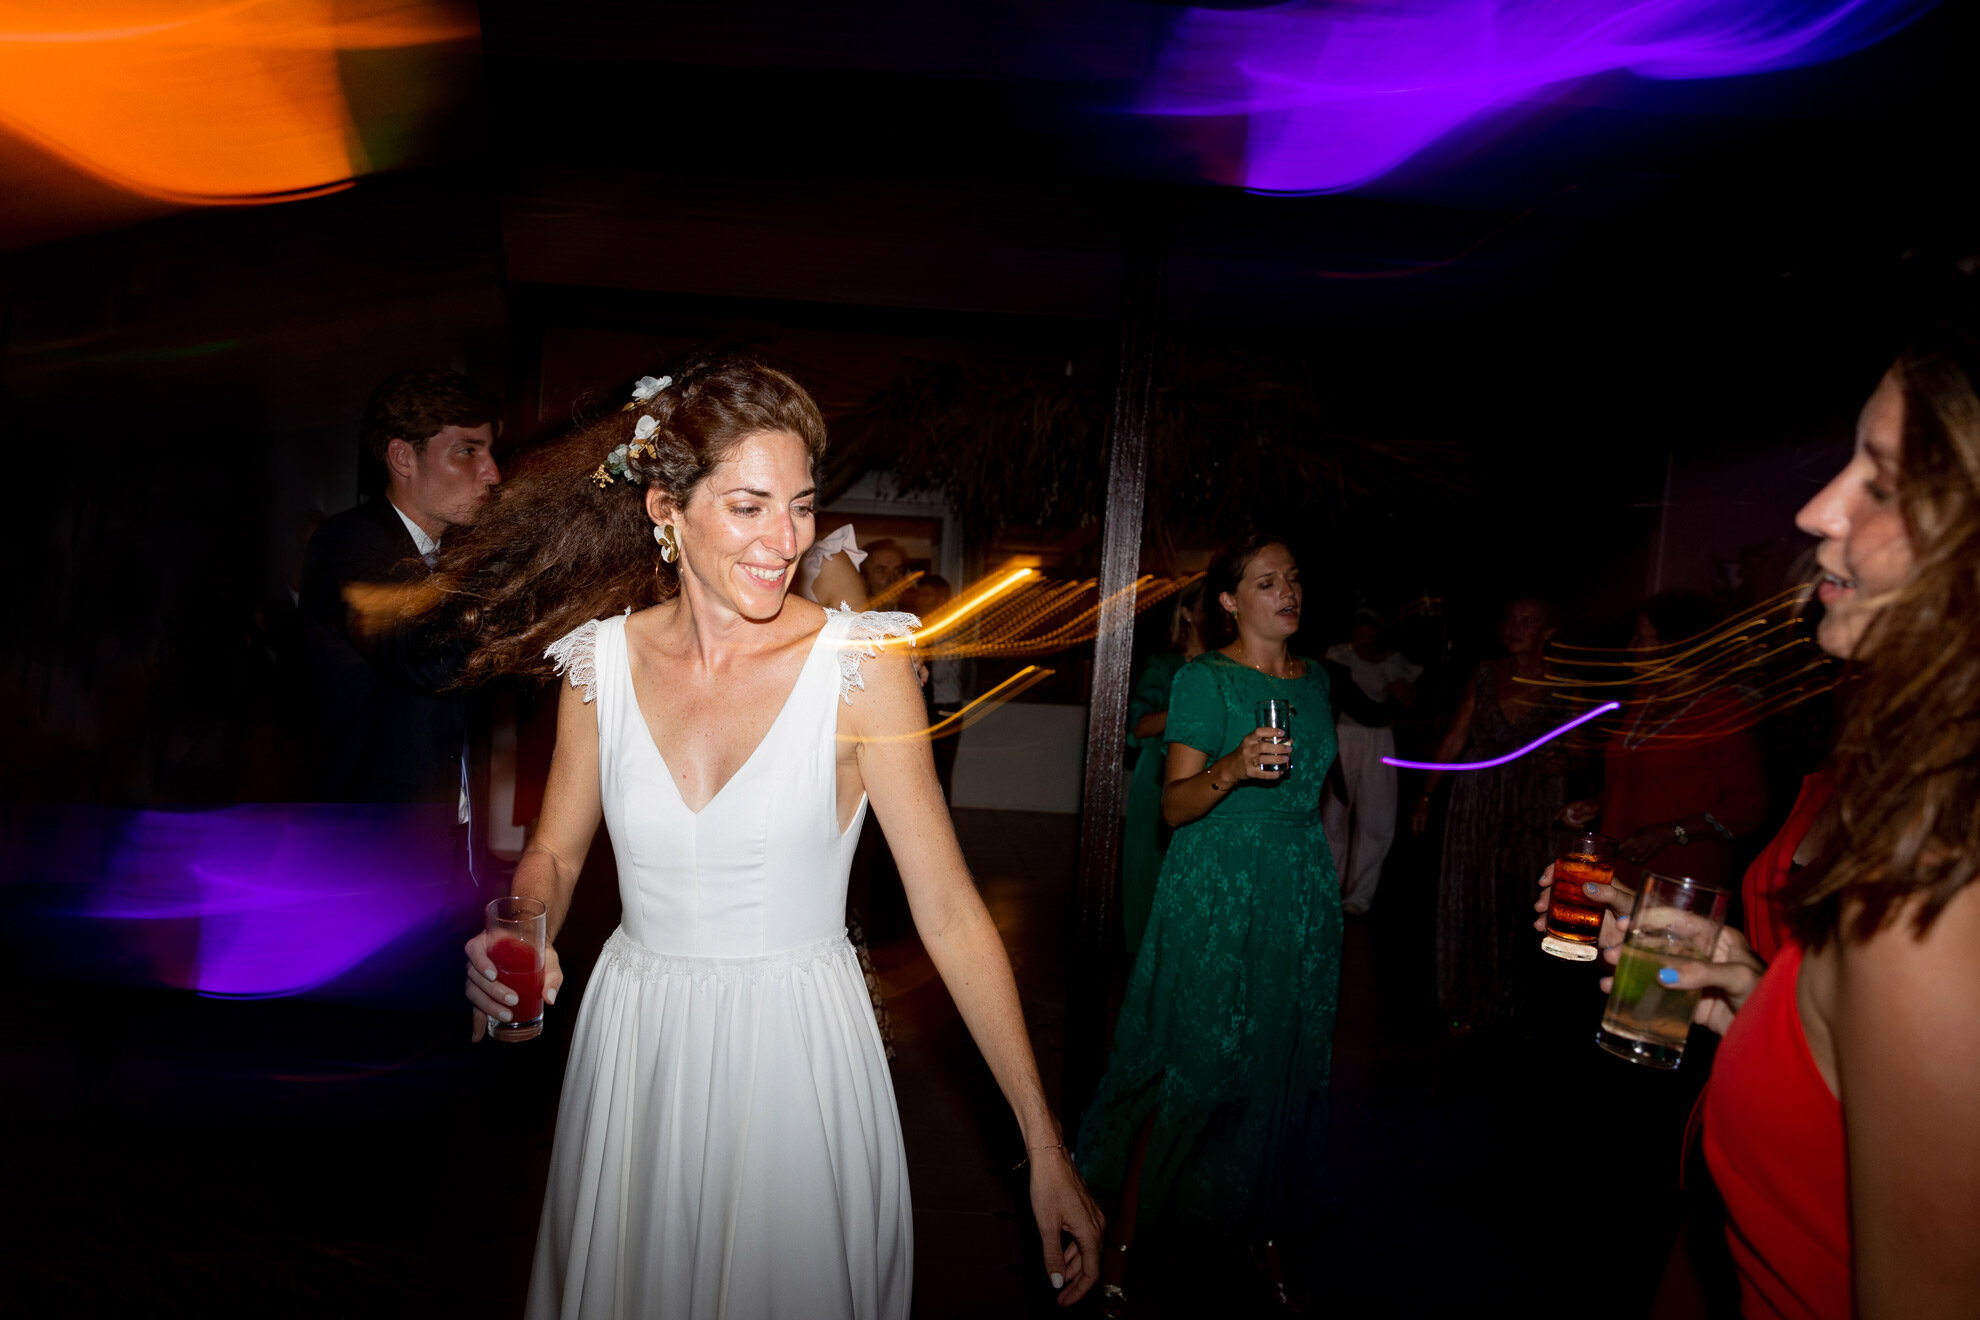 Ines-Aramburo-martinique-photographe-mariage-wedding-lifestyle-documentary18.jpg